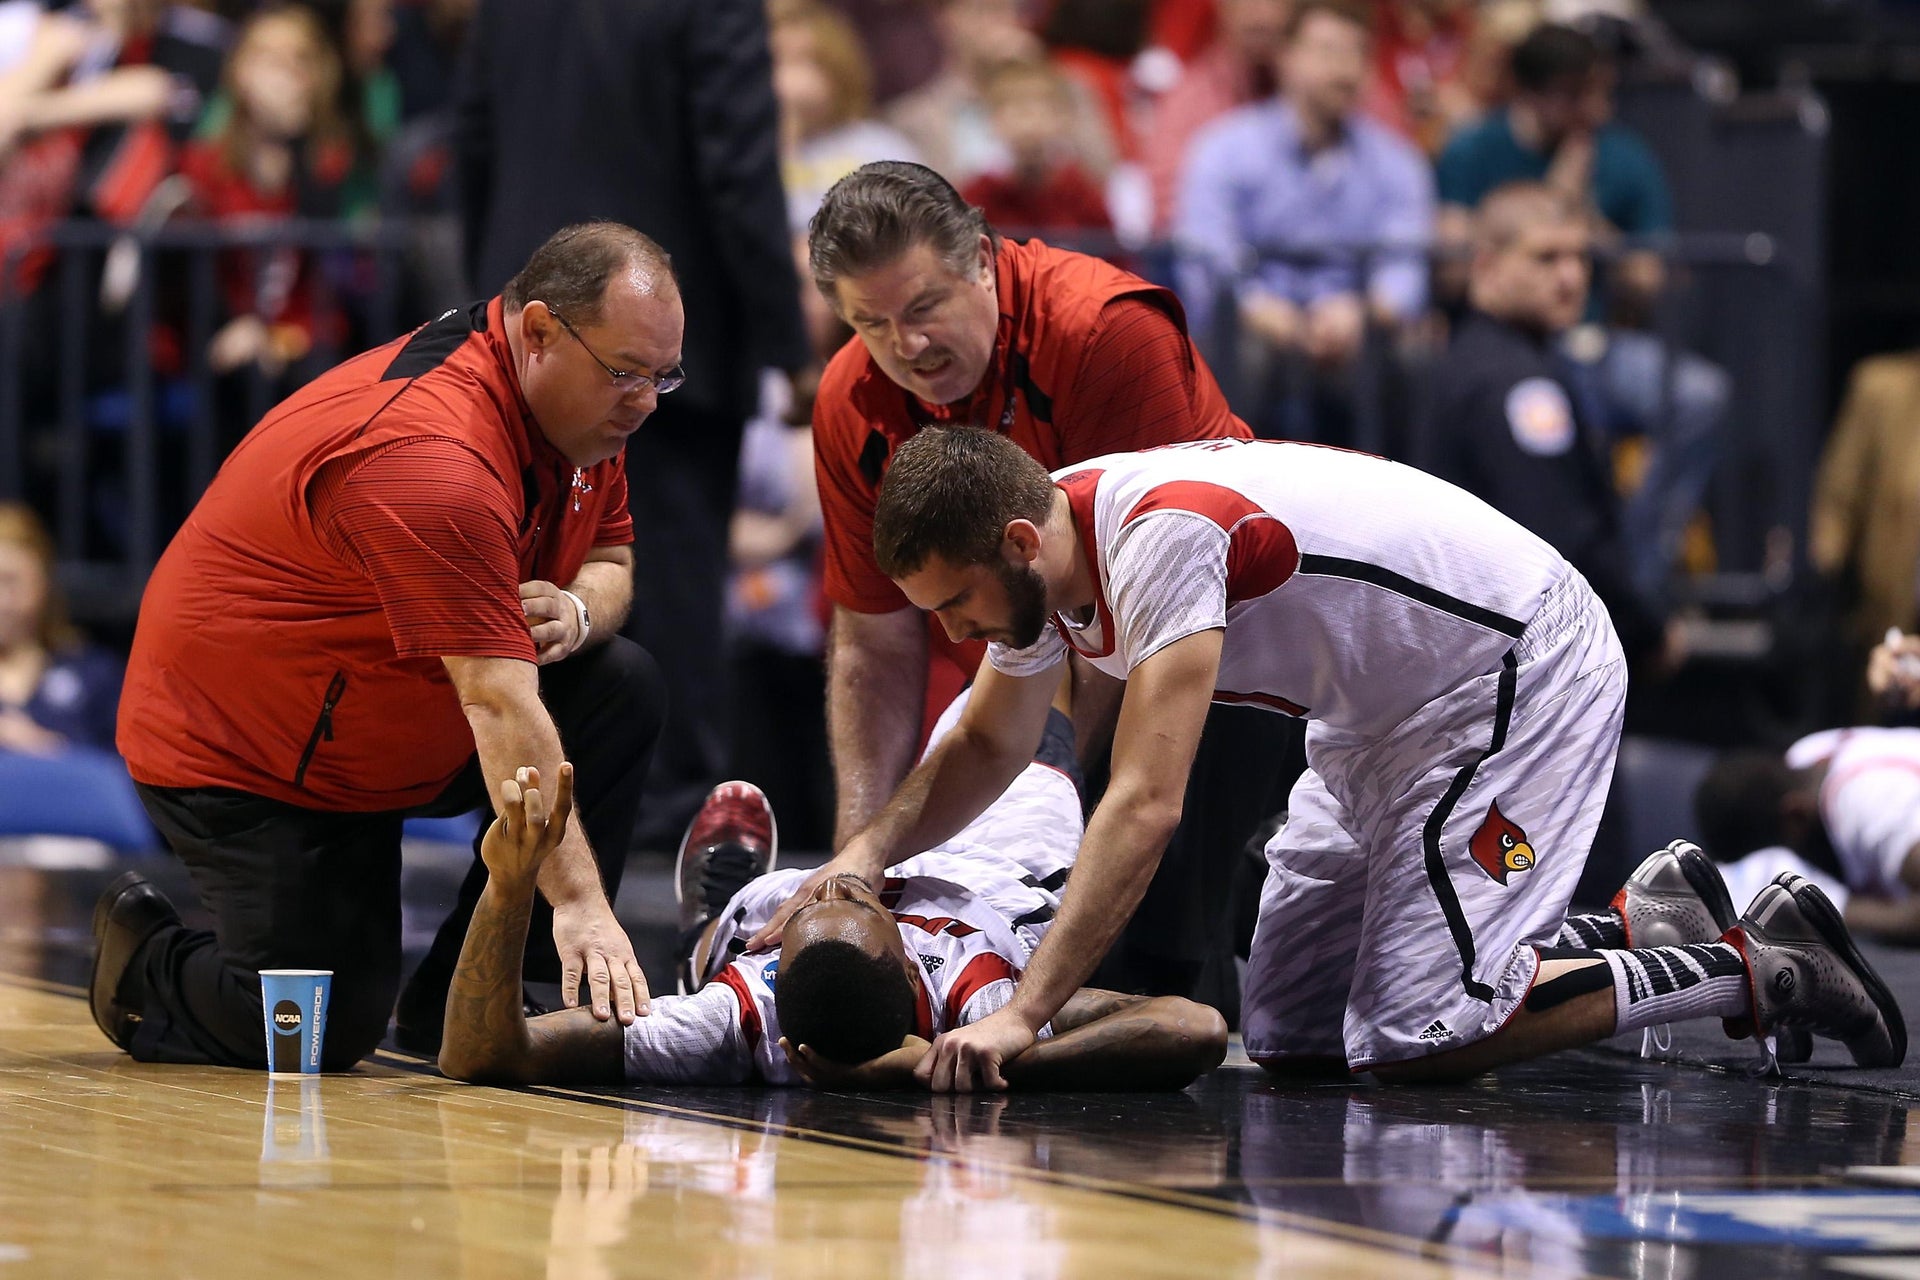 Kevin WareLeg Injury Louisville basketball player has surgery